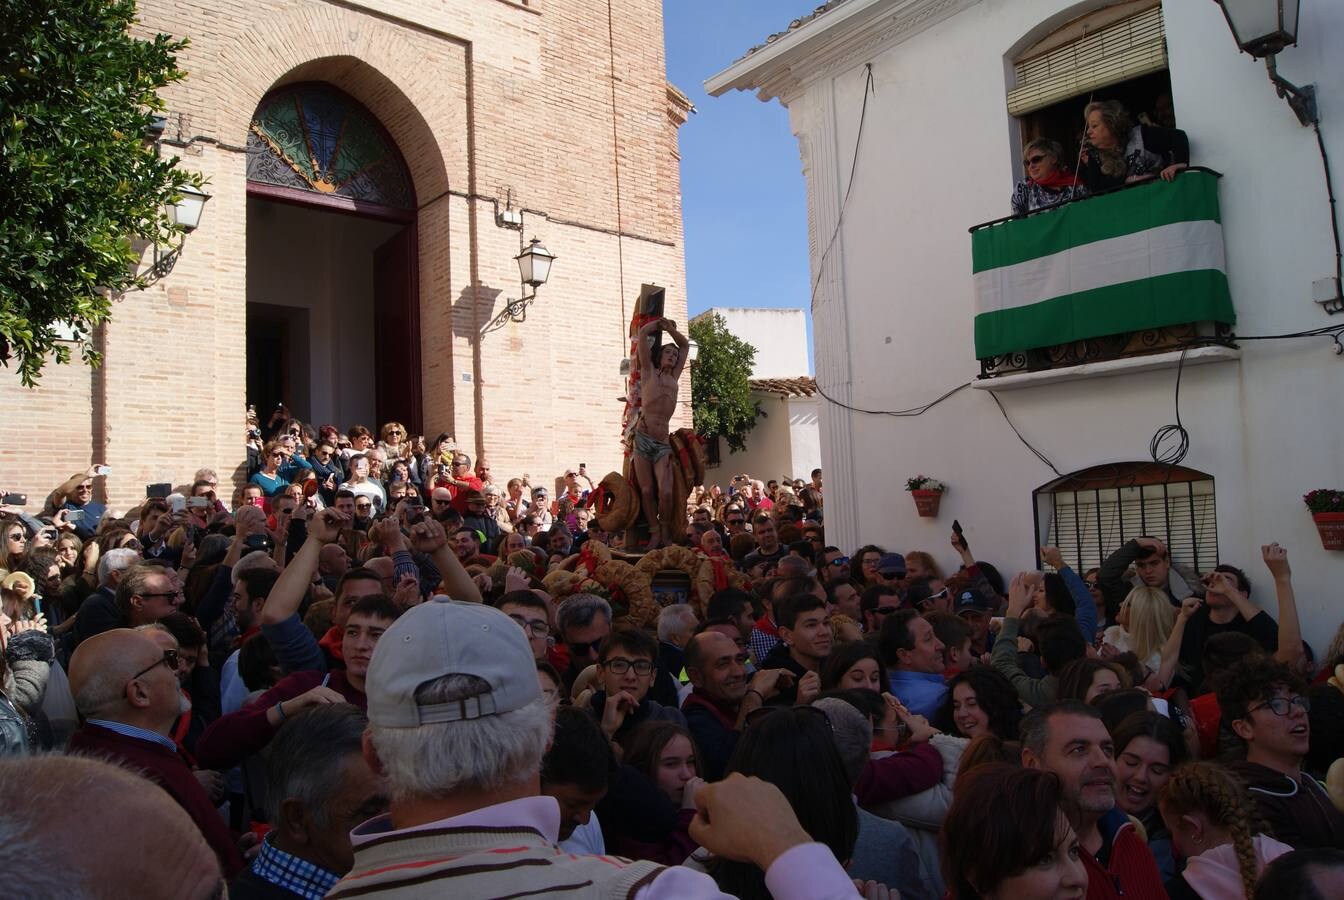 omo cada 20 de enero, miles de vecinos y visitantes abarrotaron las calles para disfrutar de una fiesta declarada de Interés Turístico de Andalucía